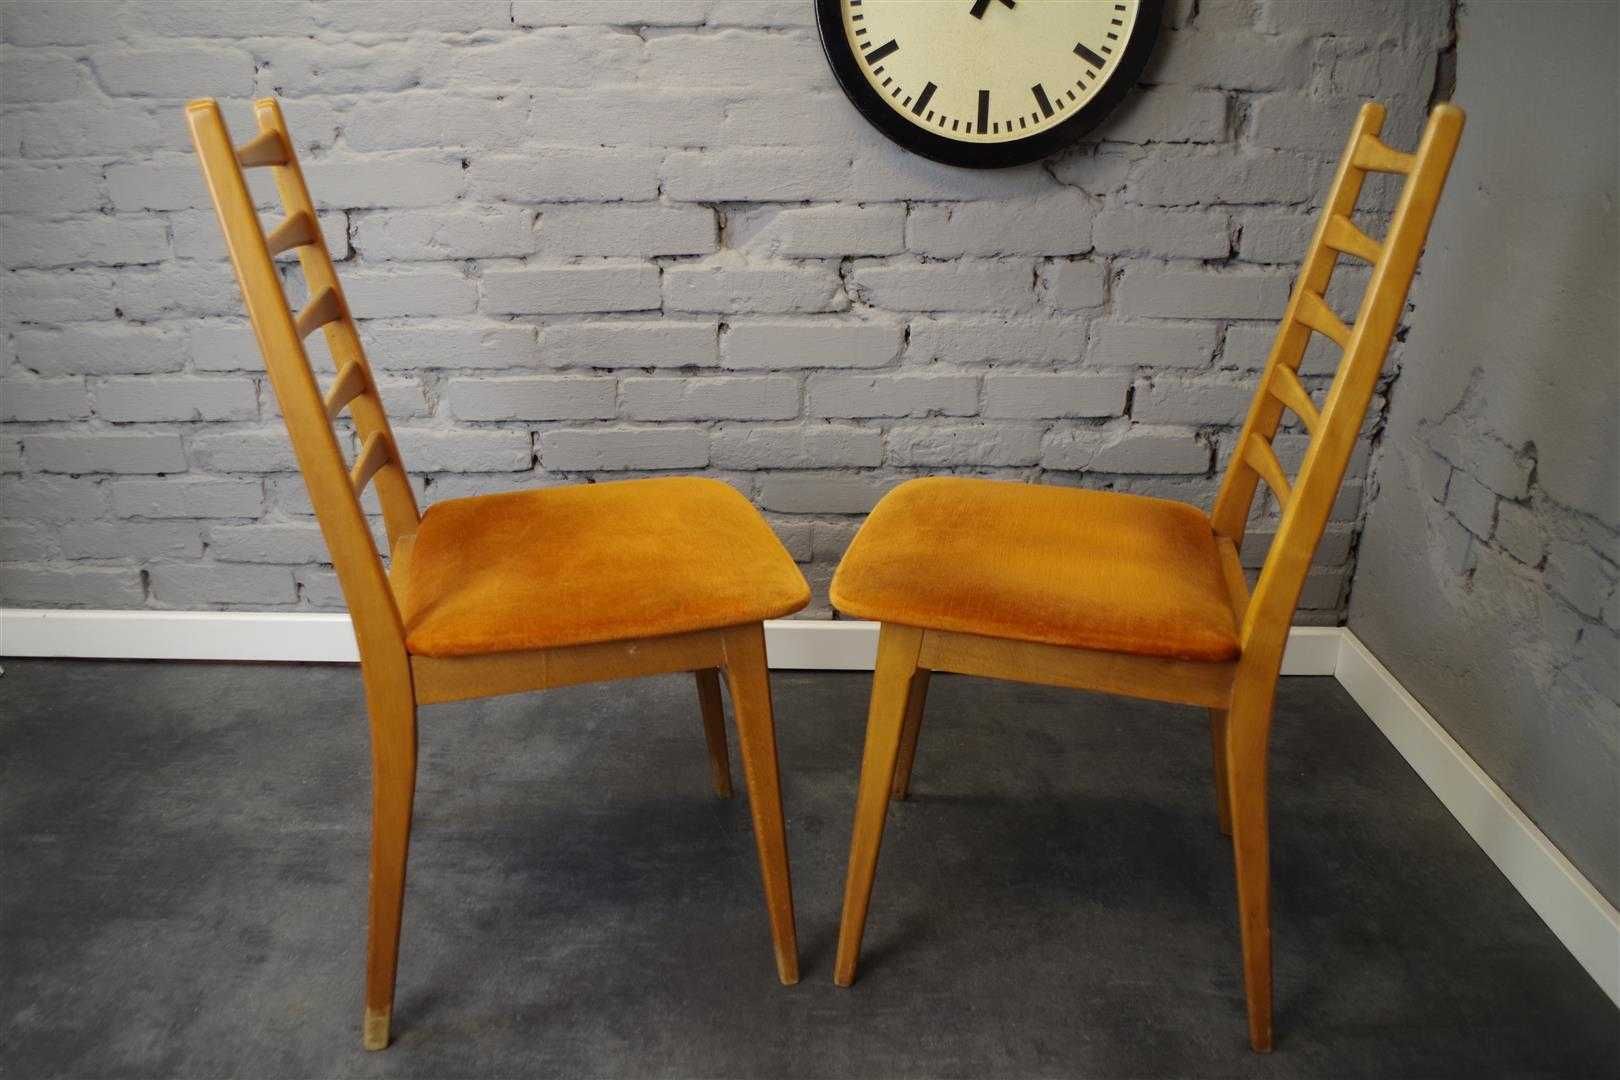 Krzesło drewniane stołowe Mignon Mobel lata 70 vintage